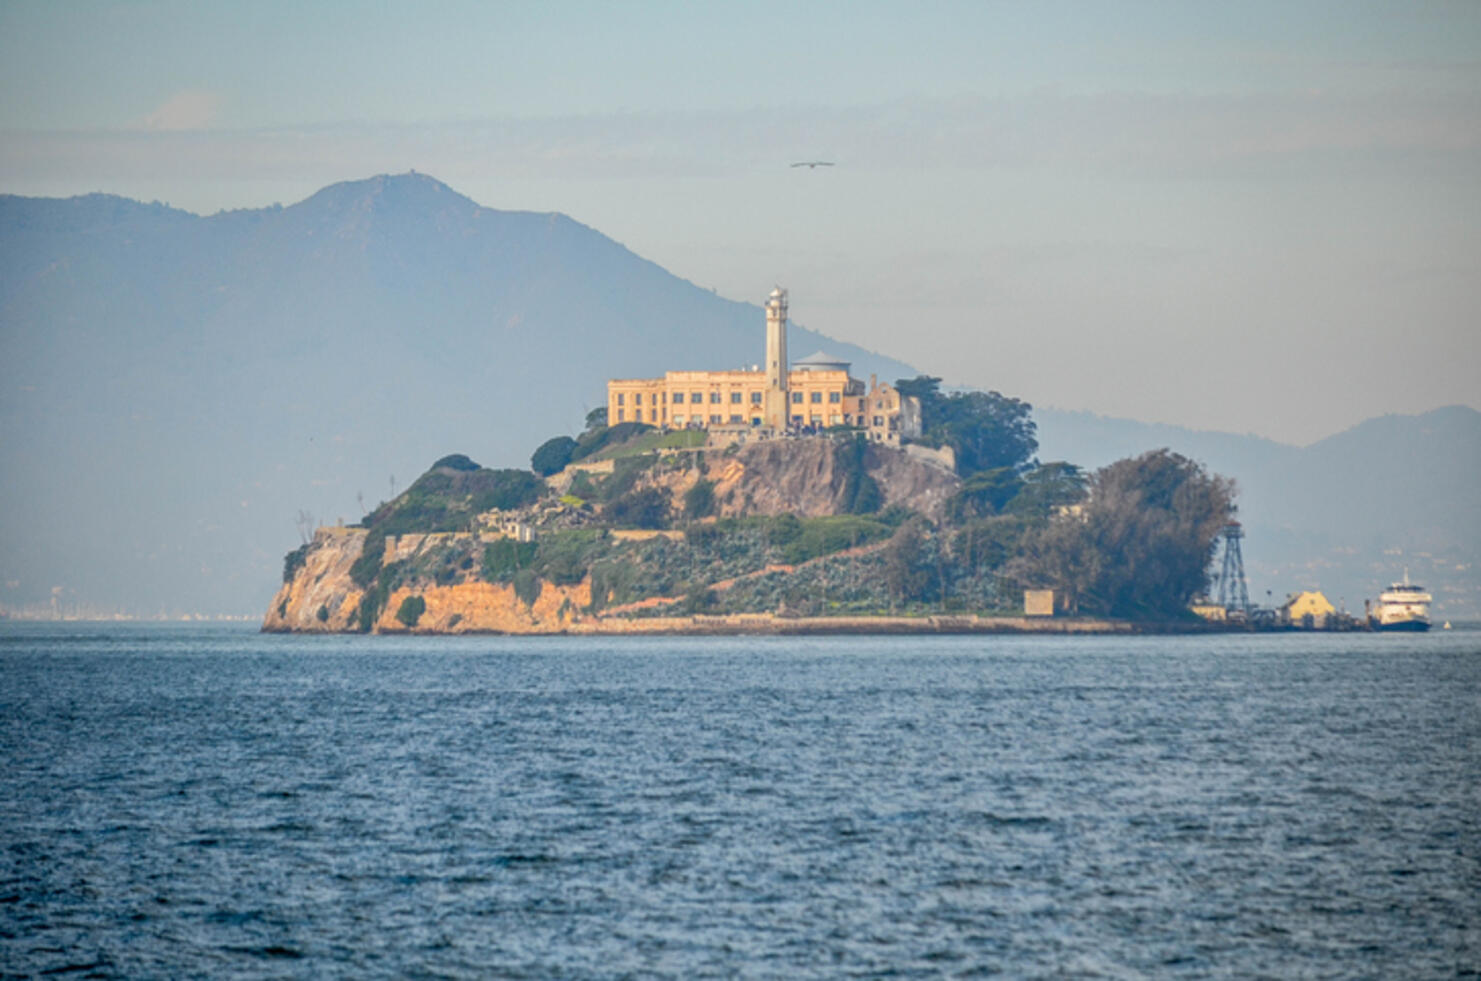 Was the Escape from Alcatraz Successful?